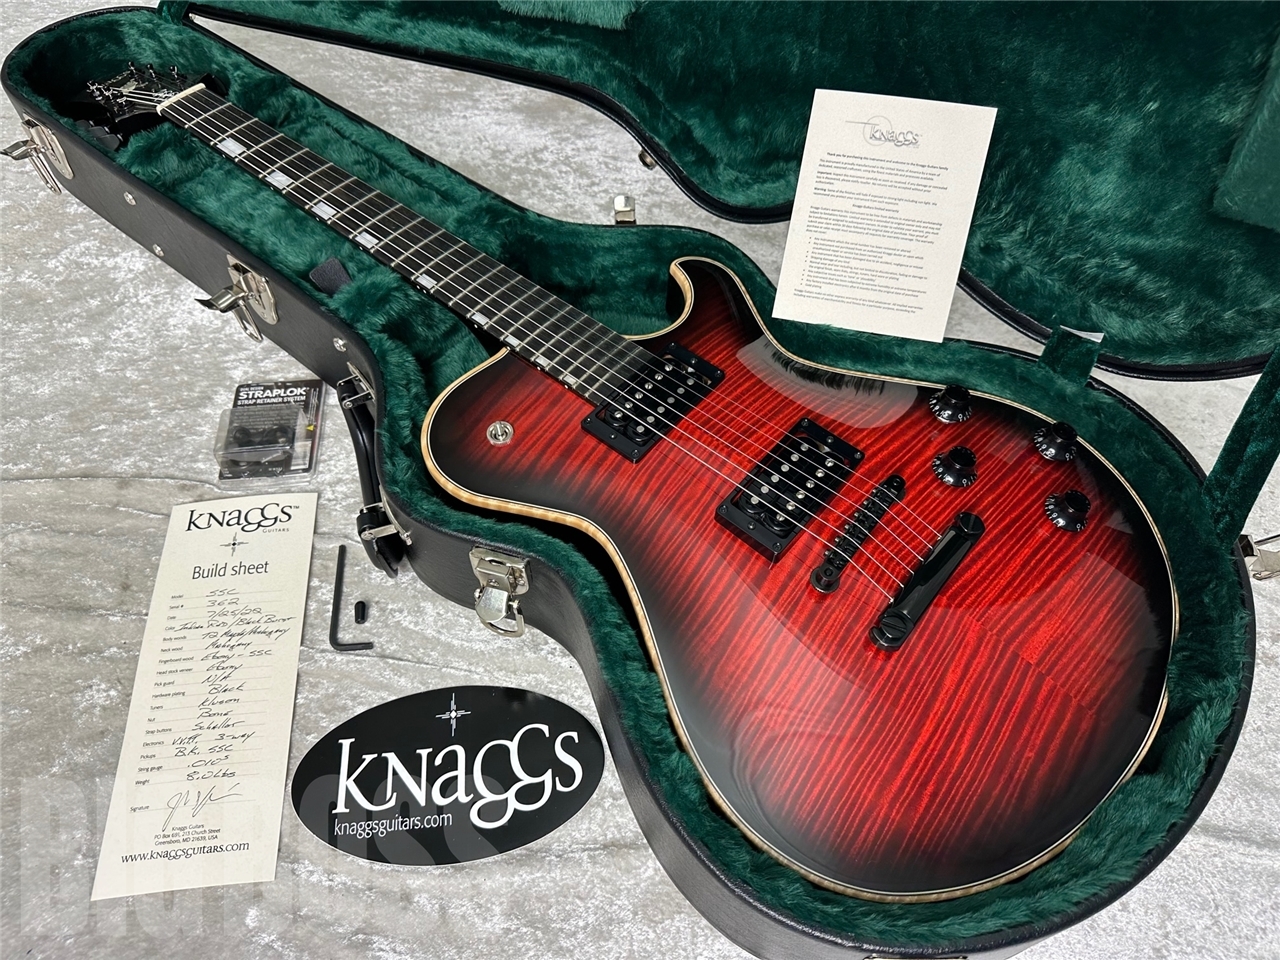 【即納可能】Knaggs Guitars(ナッグスギターズ) S.STEVENS (Indian Red / Black Burst) #362 お茶の水駅前店(東京)